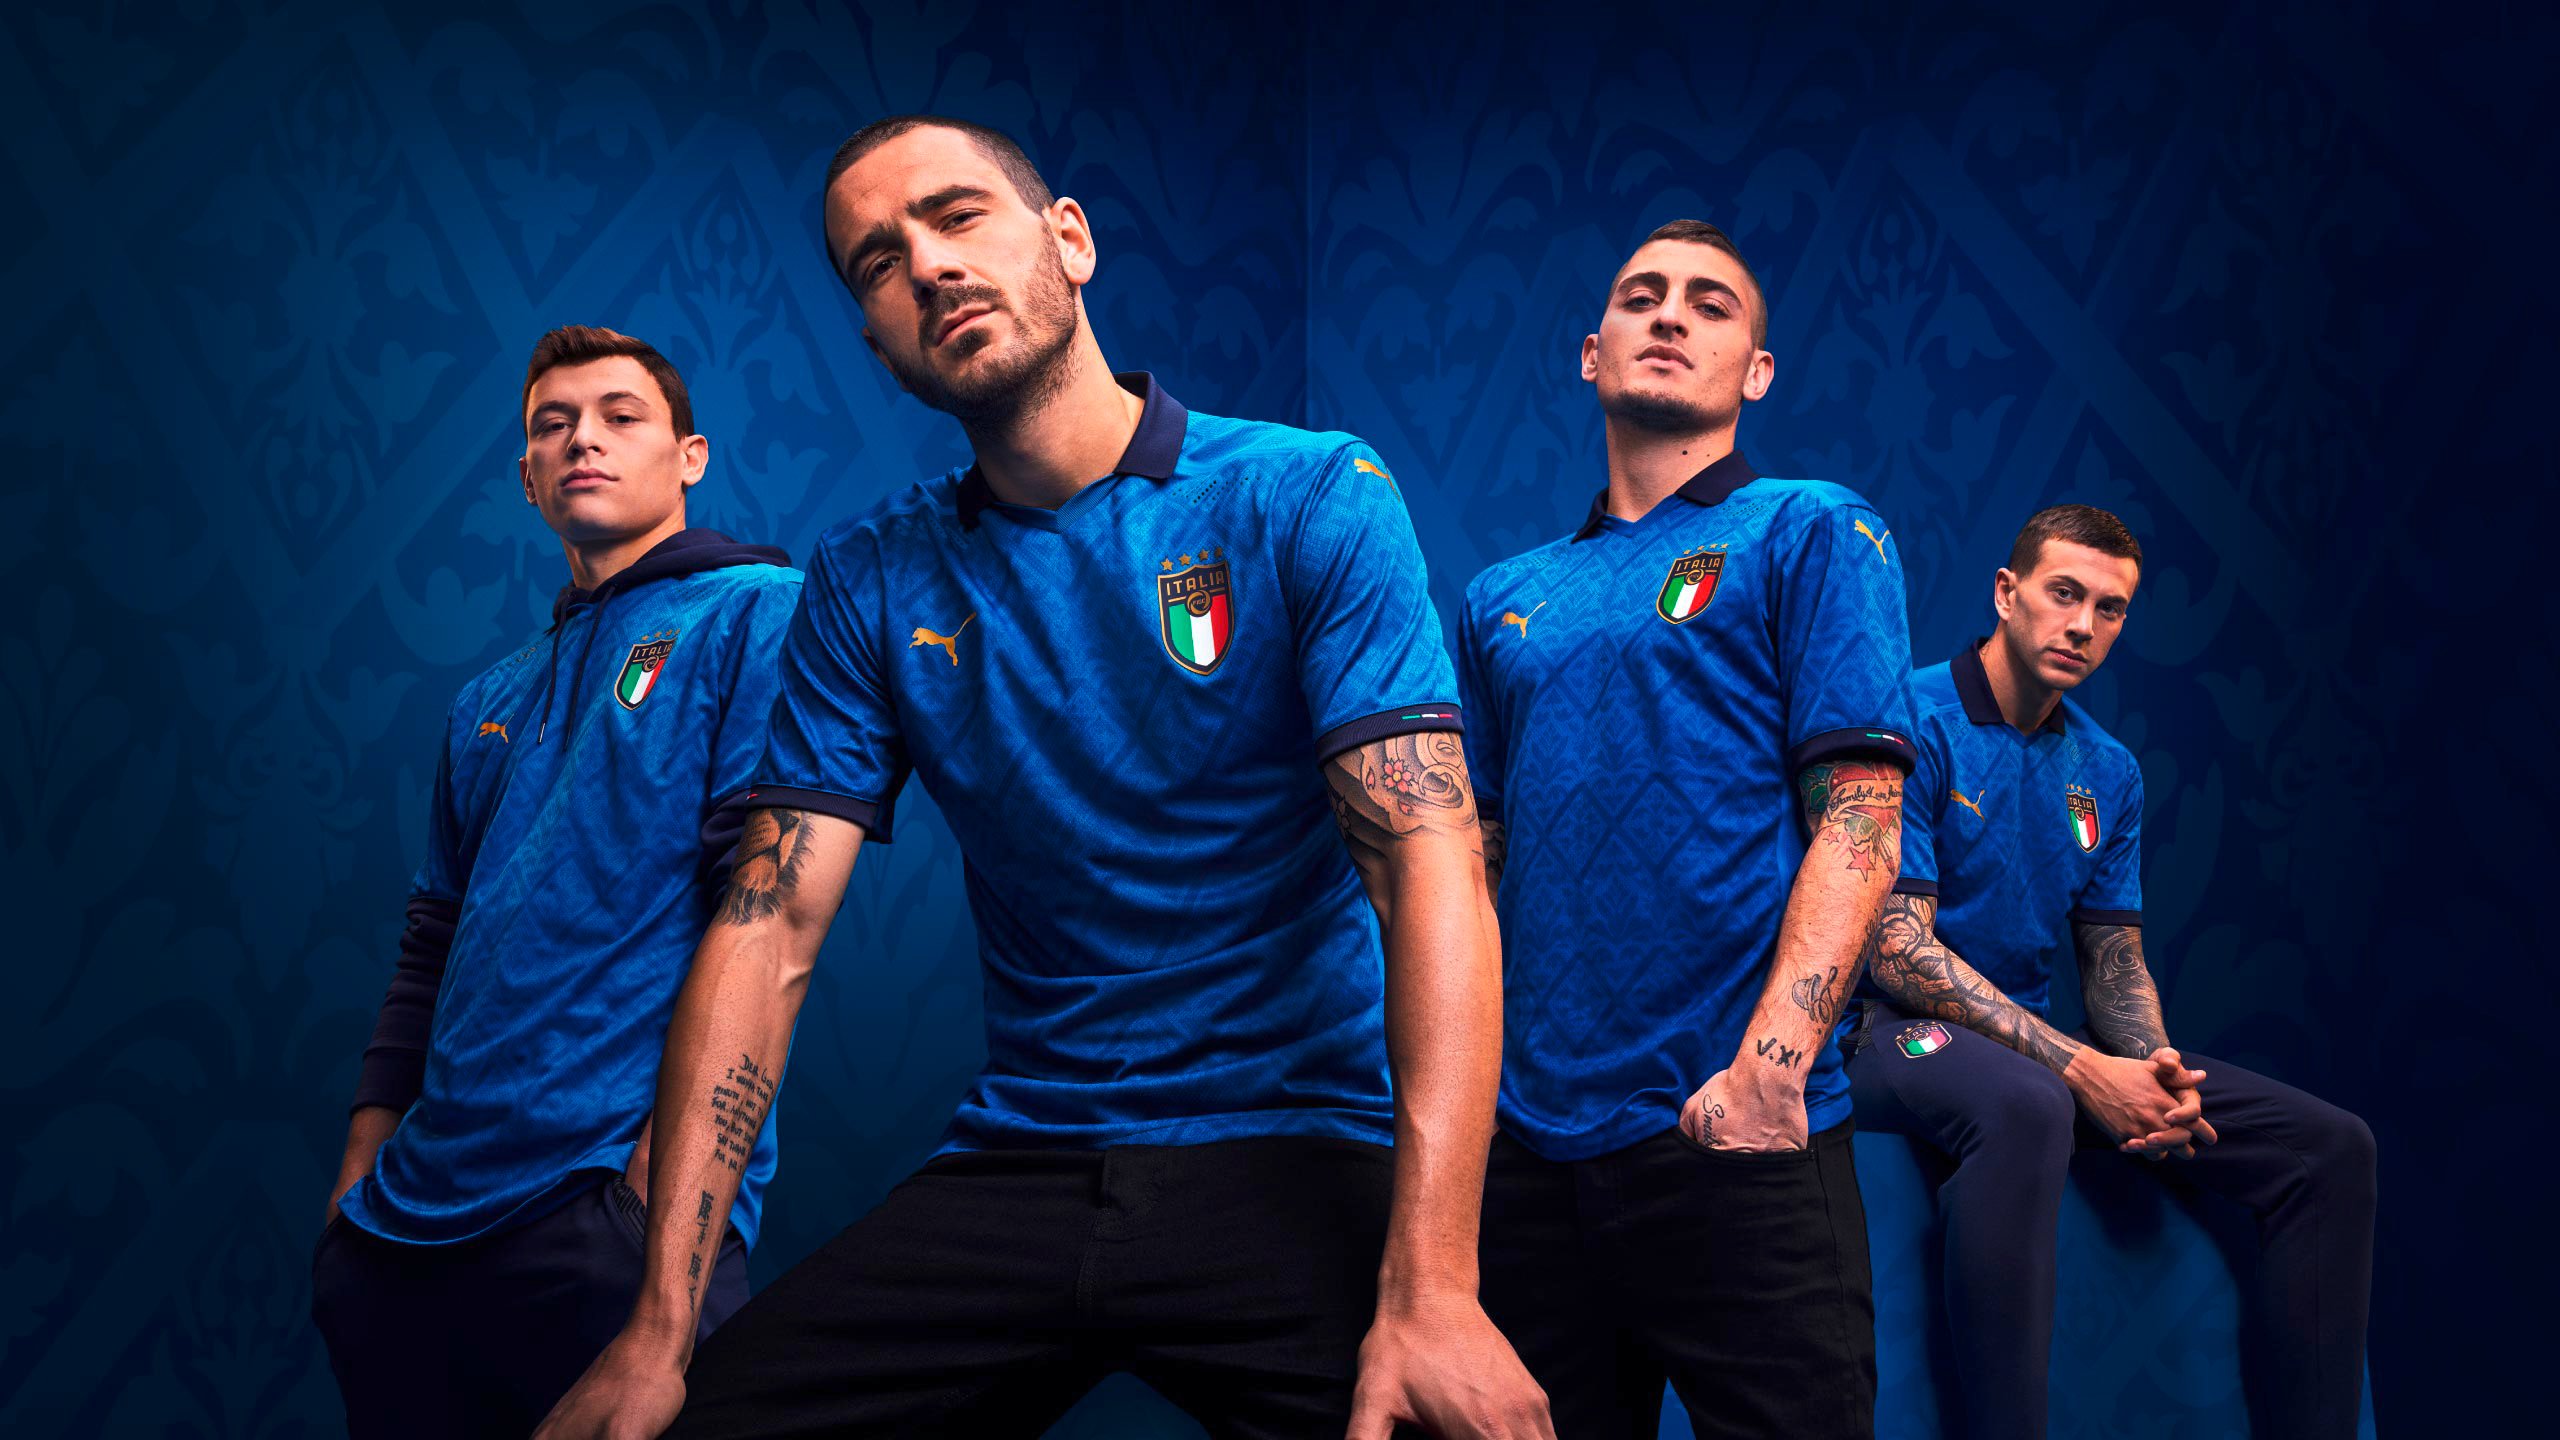 Các cầu thủ vừa vô địch EURO 2021 là trụ cột của đội tuyển Ý